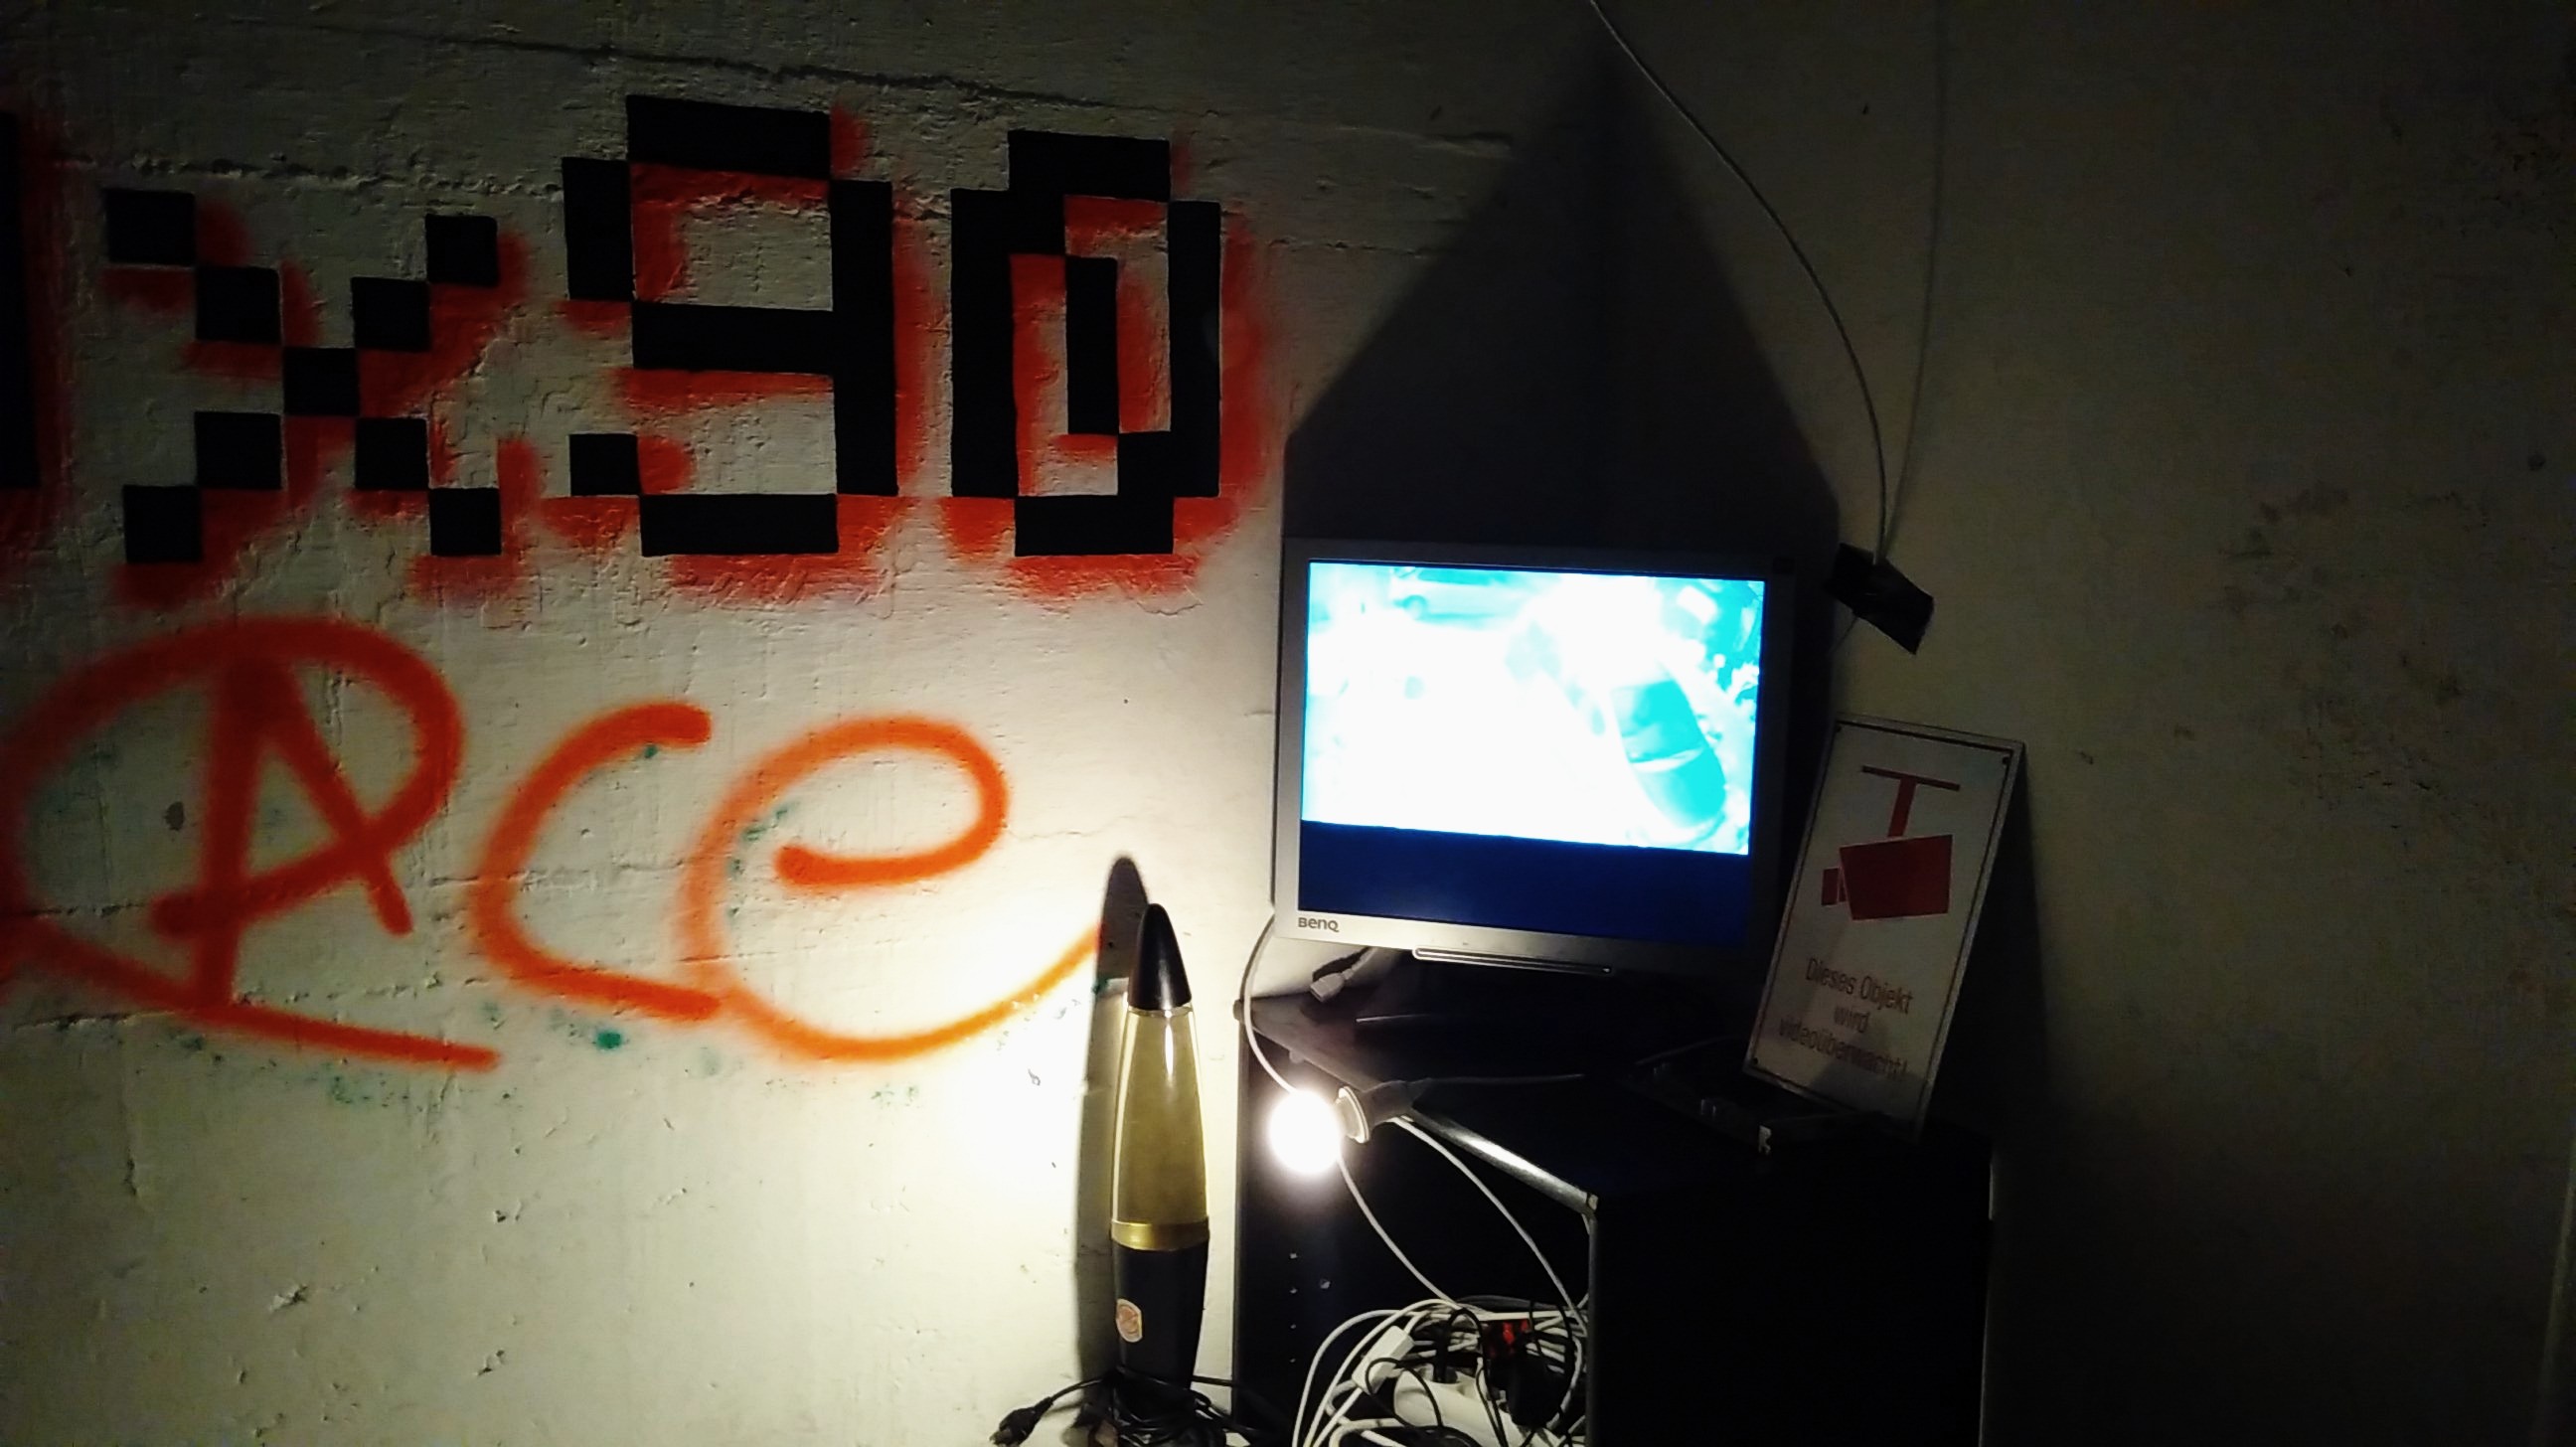 Ein leuchtender Bildschirm der neben dem 0x90.space-Schriftzug an der Wand auf einem Regal steht. Daneben sieht man eine Lavalampe und ein Schild, das vor Überwachung warnt. Das Zimmer ist abgedunkelt.